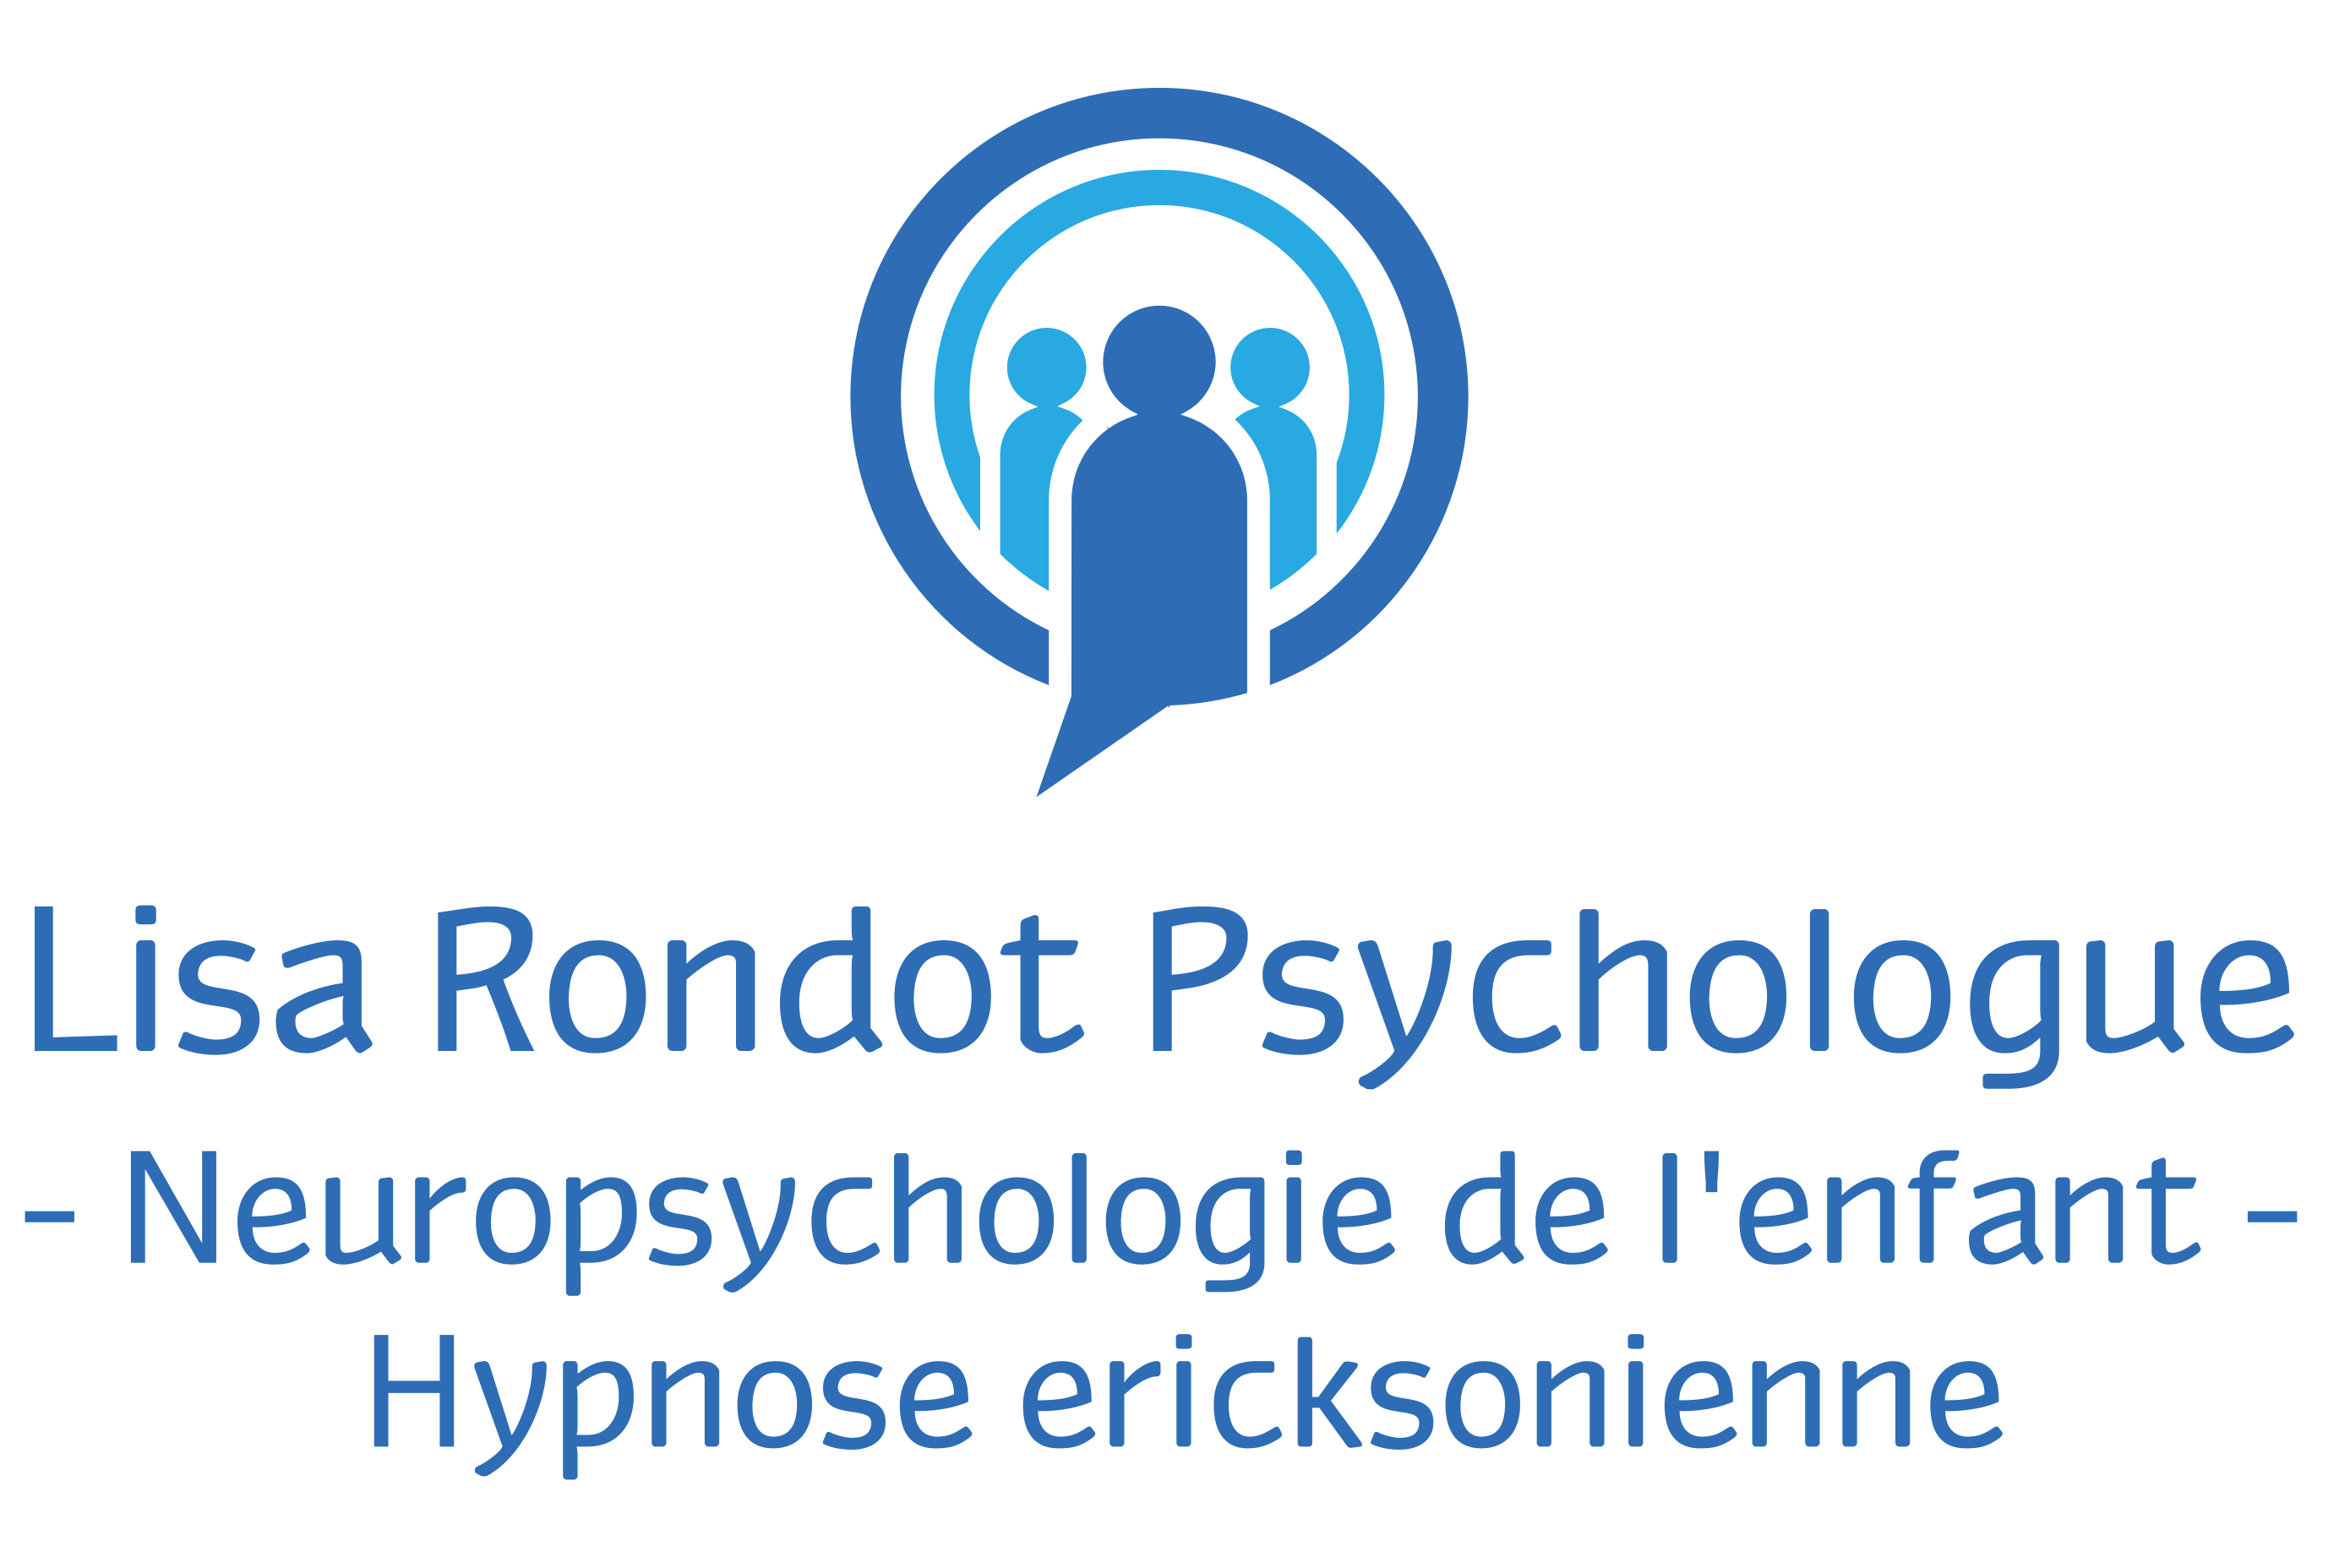 Lisa Rondot Psychologue spécialisée en Neuropsychologie de l'enfant et hypnothérapeute